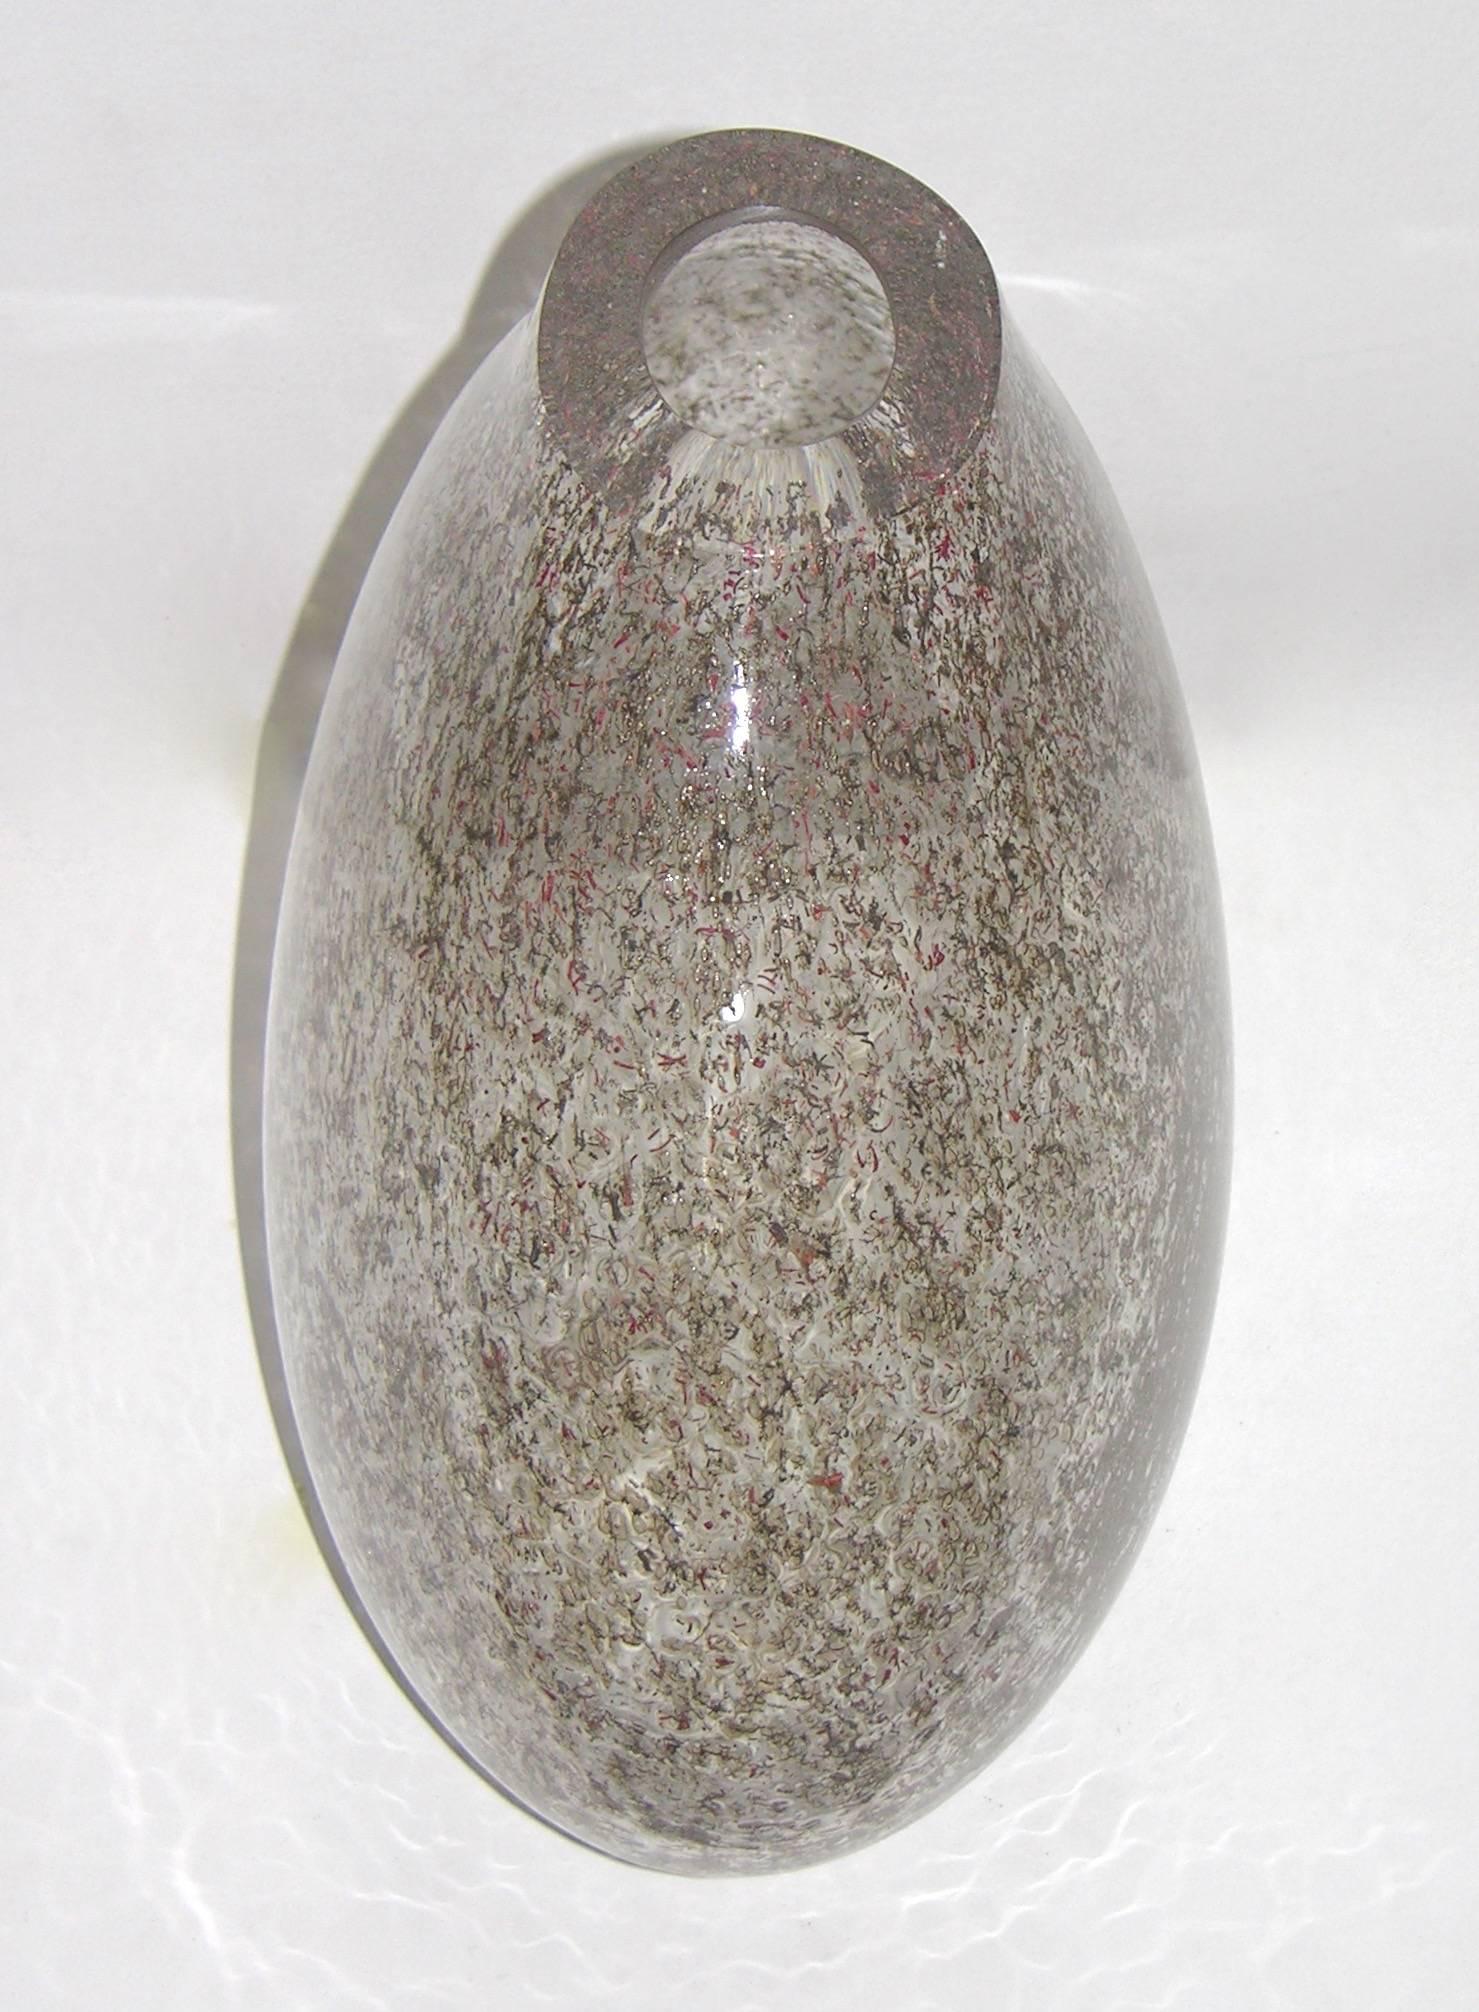 Un très intéressant vase en verre soufflé de Murano, une création de Paolo Crepax pour Le Fablier, la texture est incroyable grâce à une technique exceptionnelle d'insertion de filaments organiques rouges et verts dans le verre clair travaillé avec